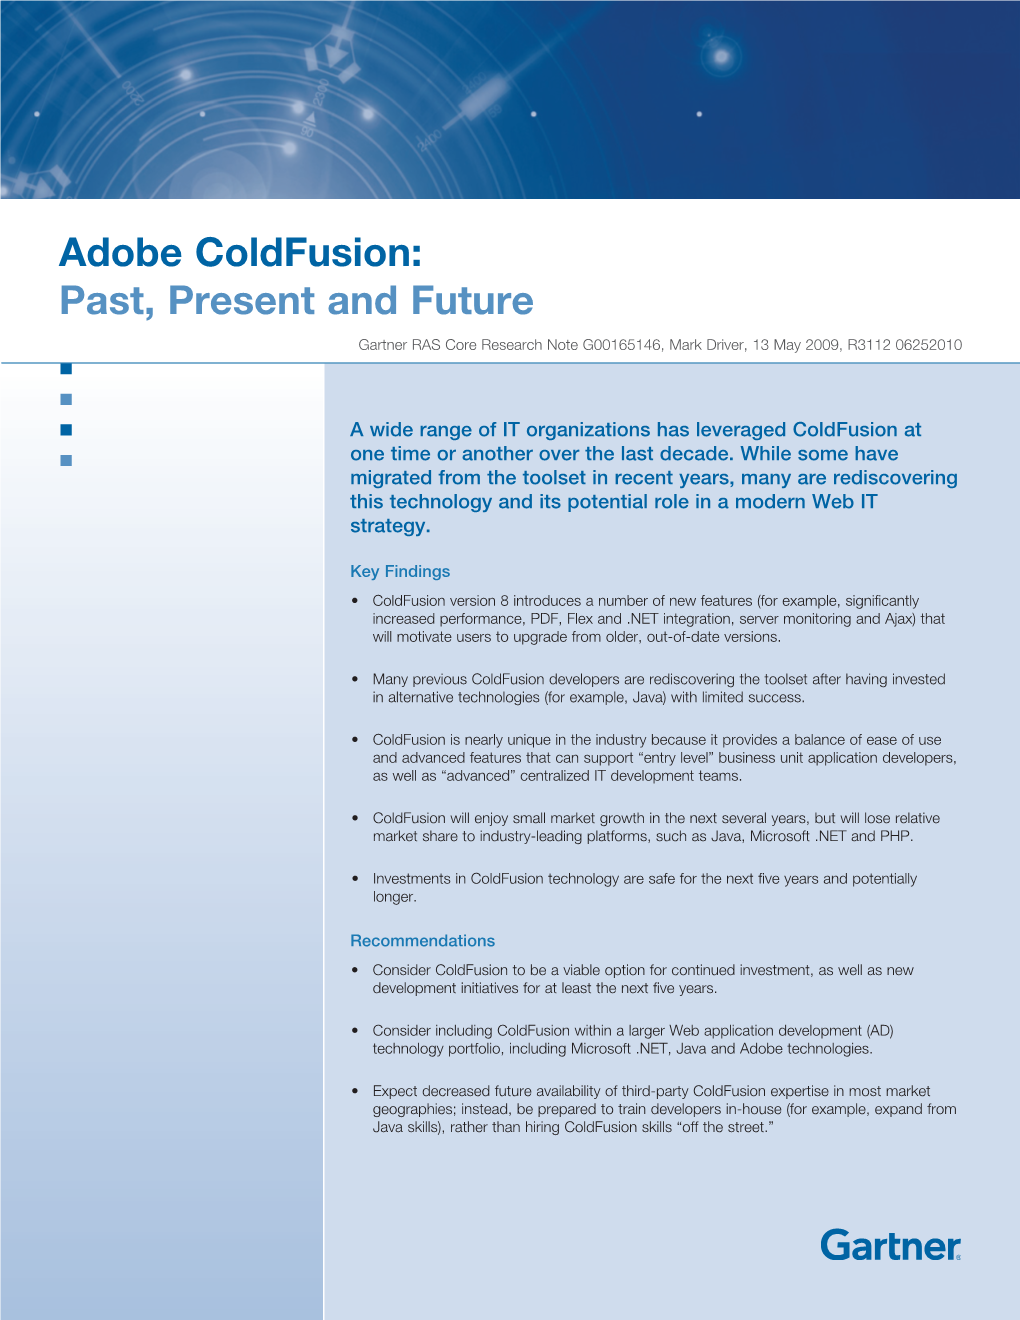 Adobe Coldfusion: Past, Present and Future